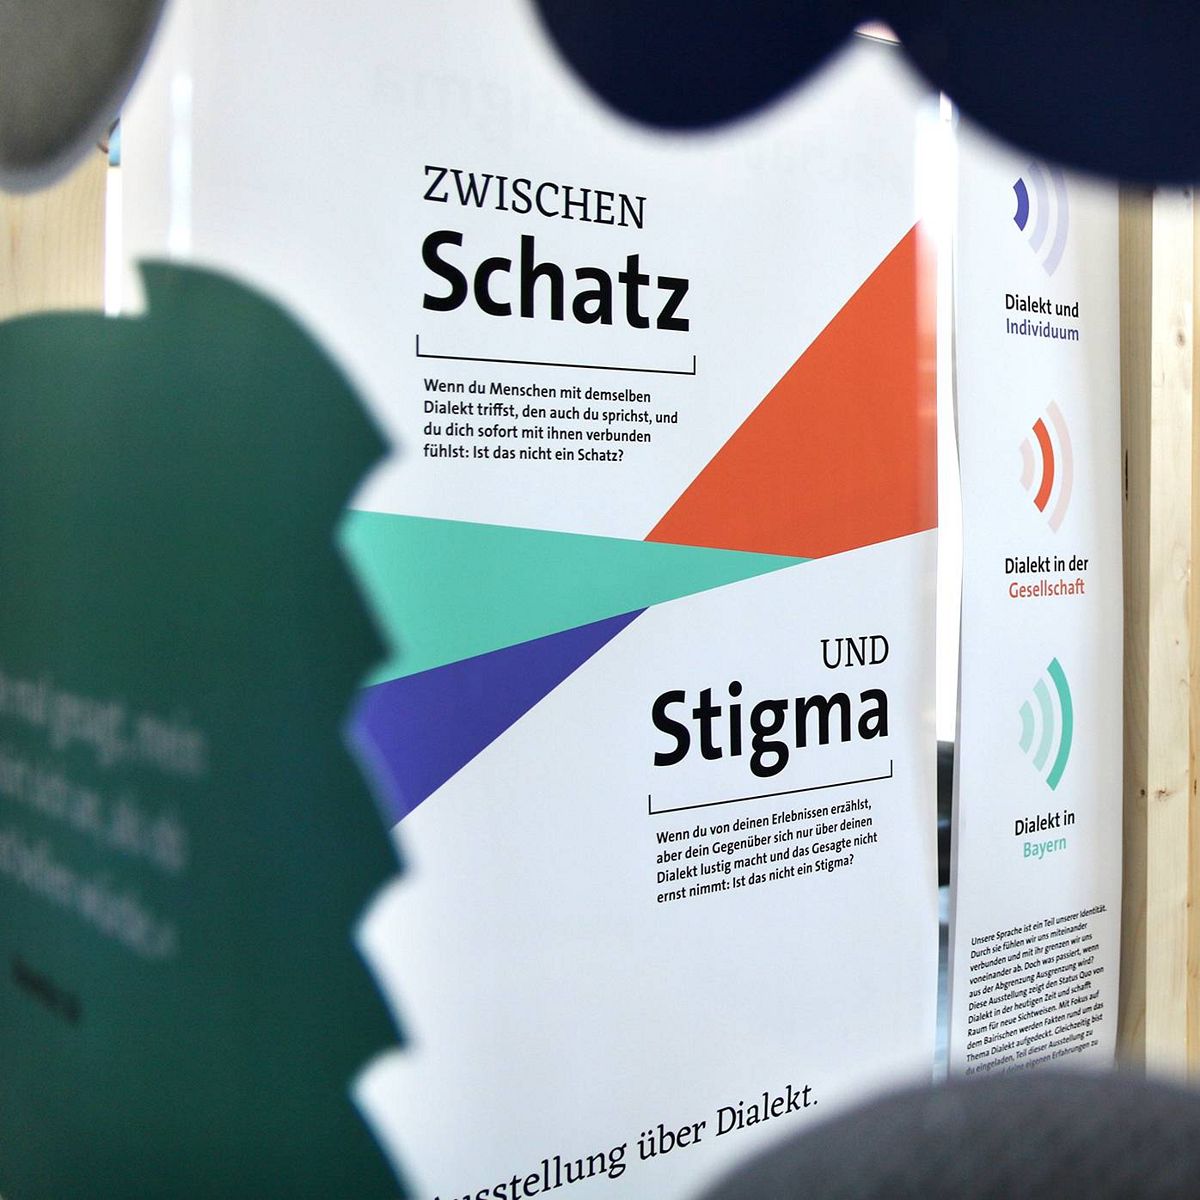 Zu sehen ist die Ausstellung „Zwischen Schatz und Stigma“ vom 07.-23.11.2022 im HSA_transmitter.